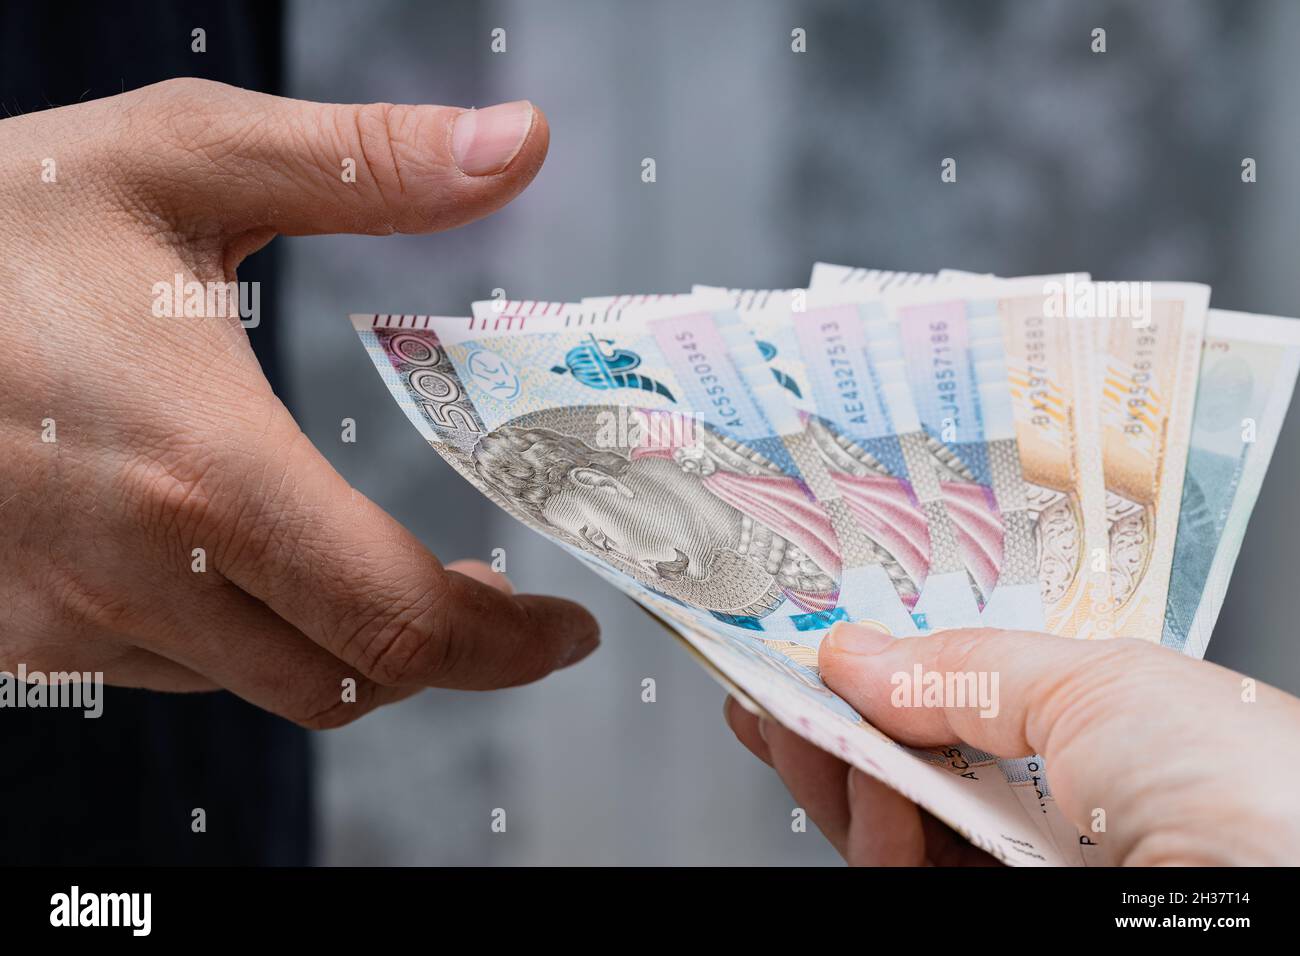 Polnisches Geld, Eine Akte von 500 und 200 Zloty-Banknoten, die von Hand zu Hand an eine andere Person übertragen wurden Stockfoto